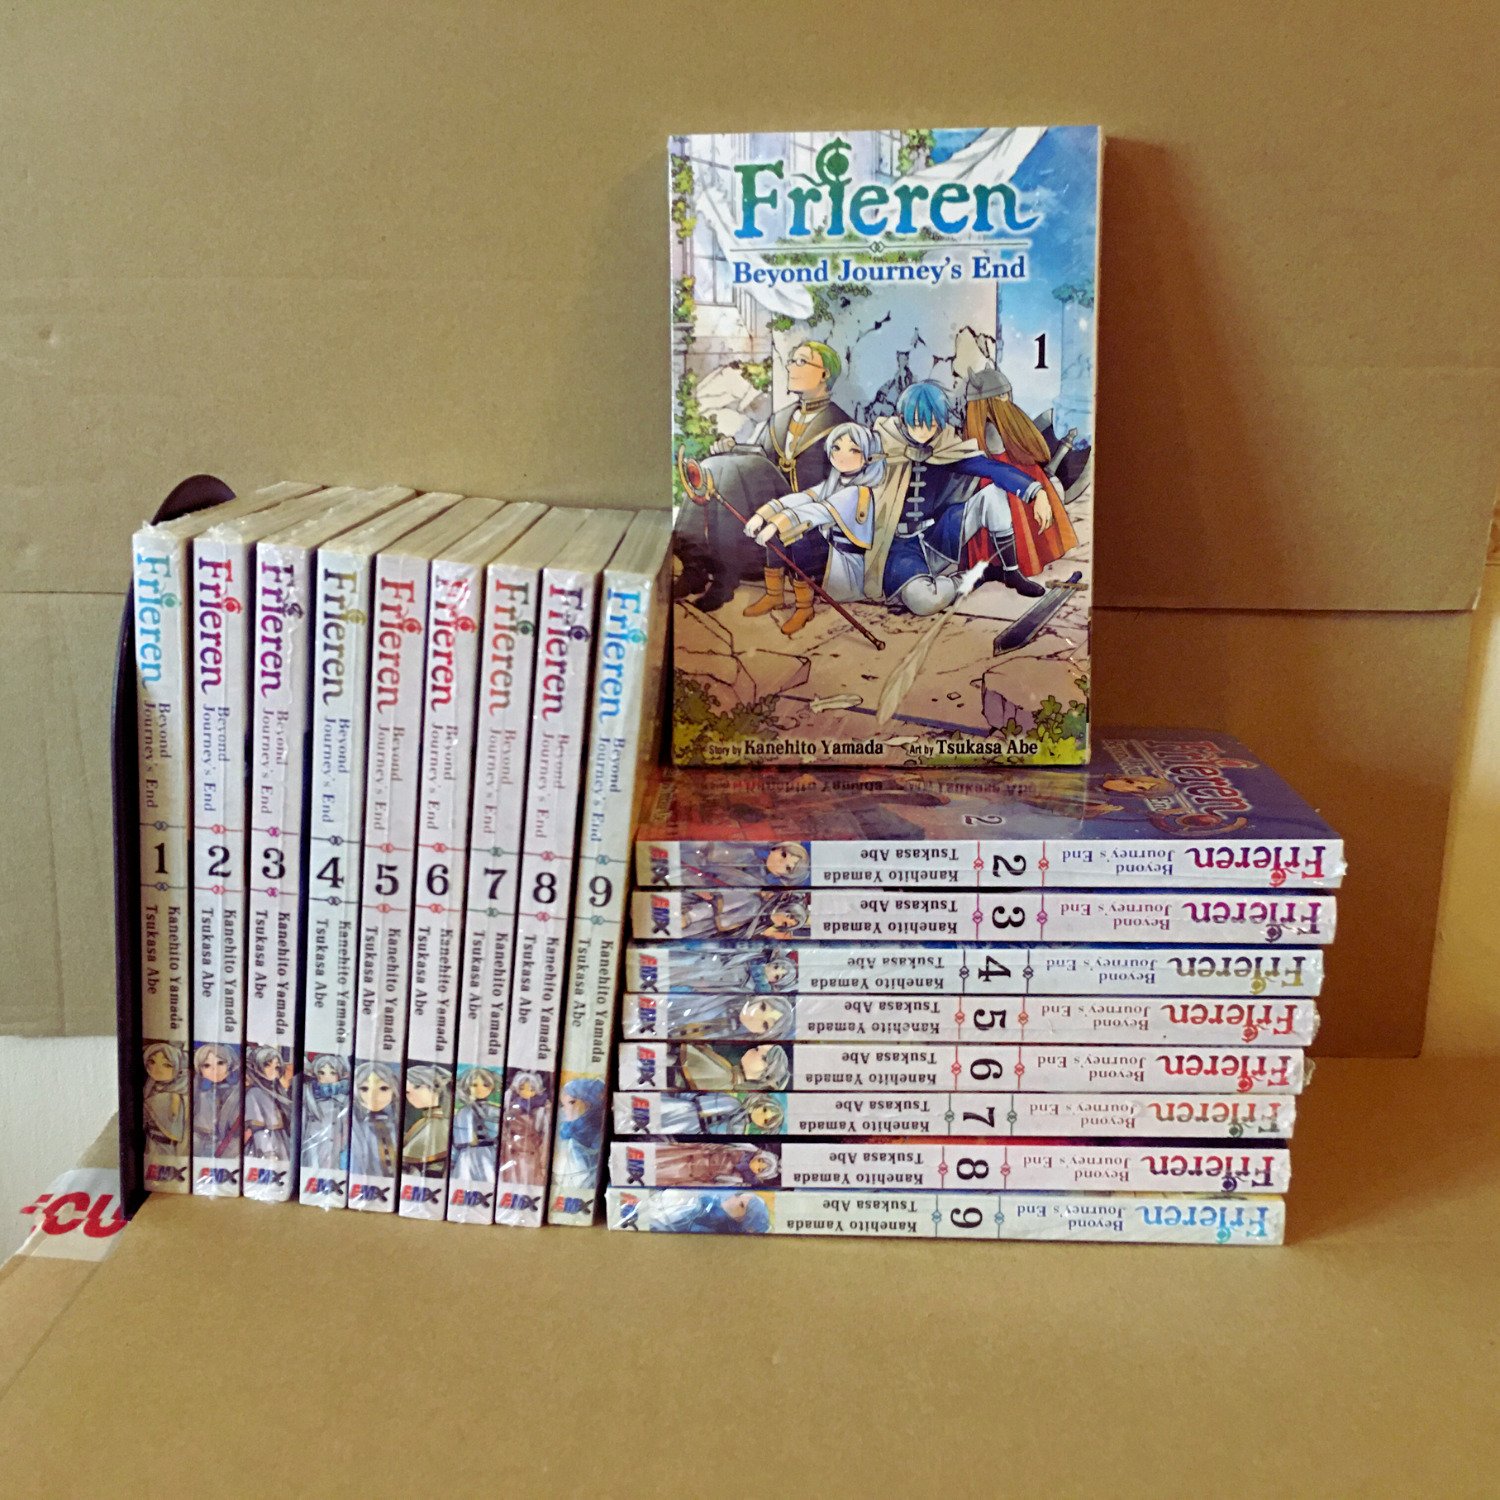 Frieren:Beyond Journey's End Manga Vol 1-9 (FULL SET) English Version-FREE SHIP